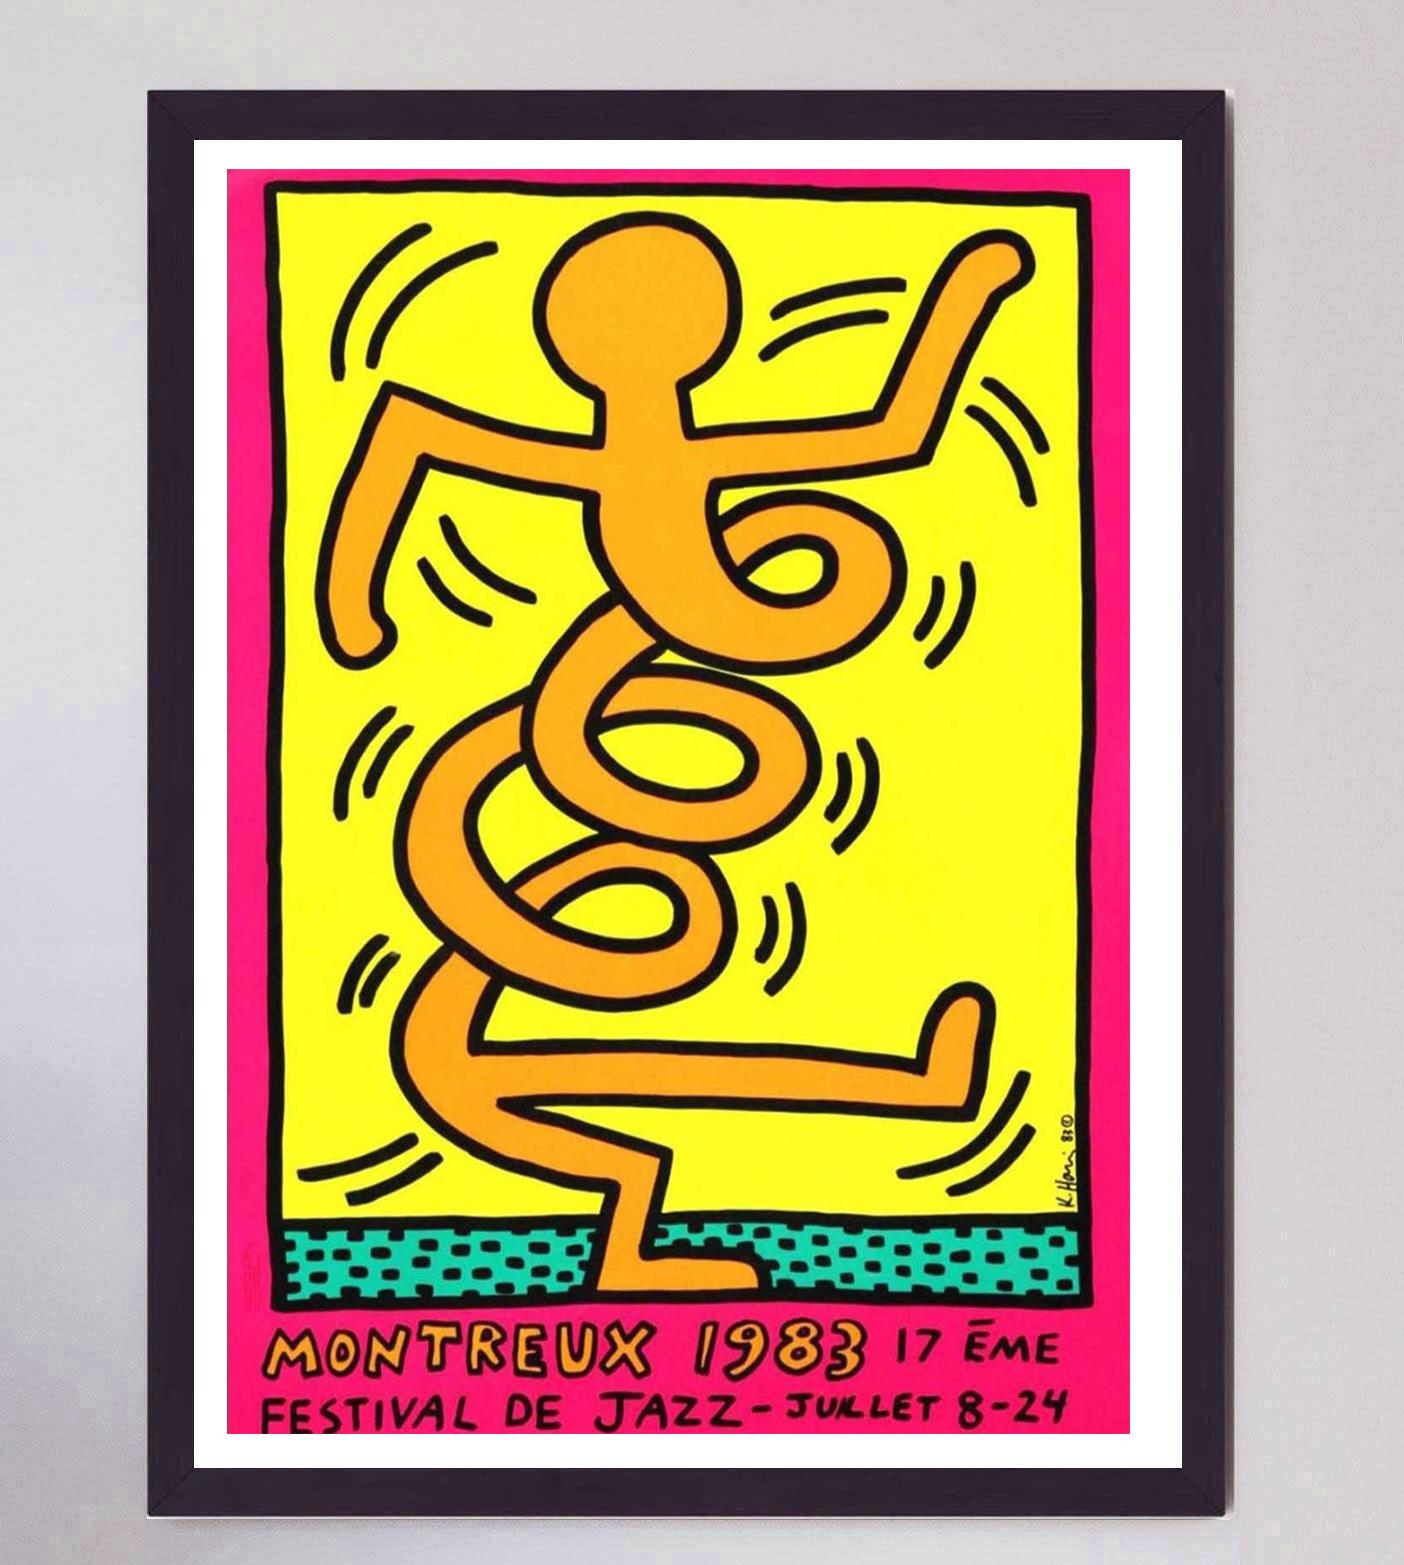 1983 wurde Keith Haring gebeten, ein Plakat für das berühmte Montreux Jazz Festival zu entwerfen. Er reichte 3 Entwürfe ein, die sofort angenommen wurden. Haring besuchte Montreux für die Veranstaltung und verbrachte die gesamte Zeit damit, in den